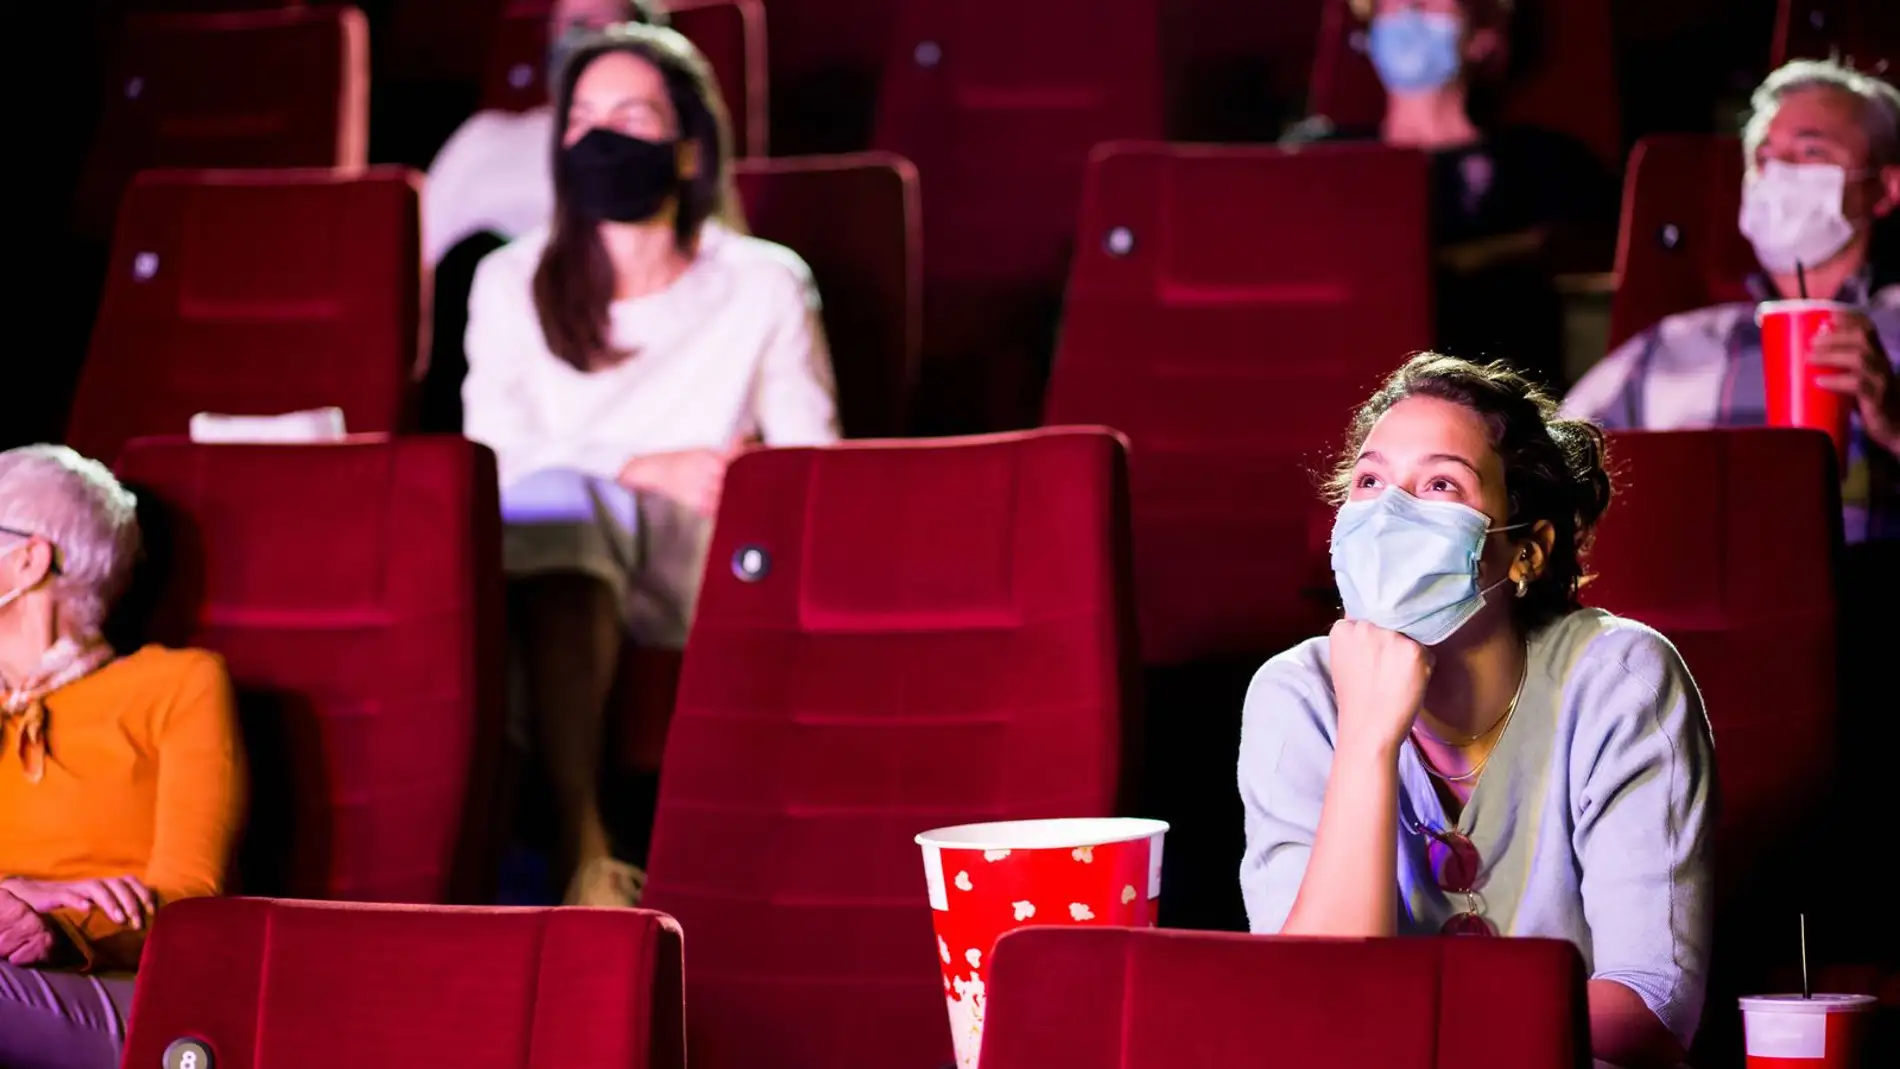 Varios espectadores, en una sala de cine, durante la pandemia por coronavirus